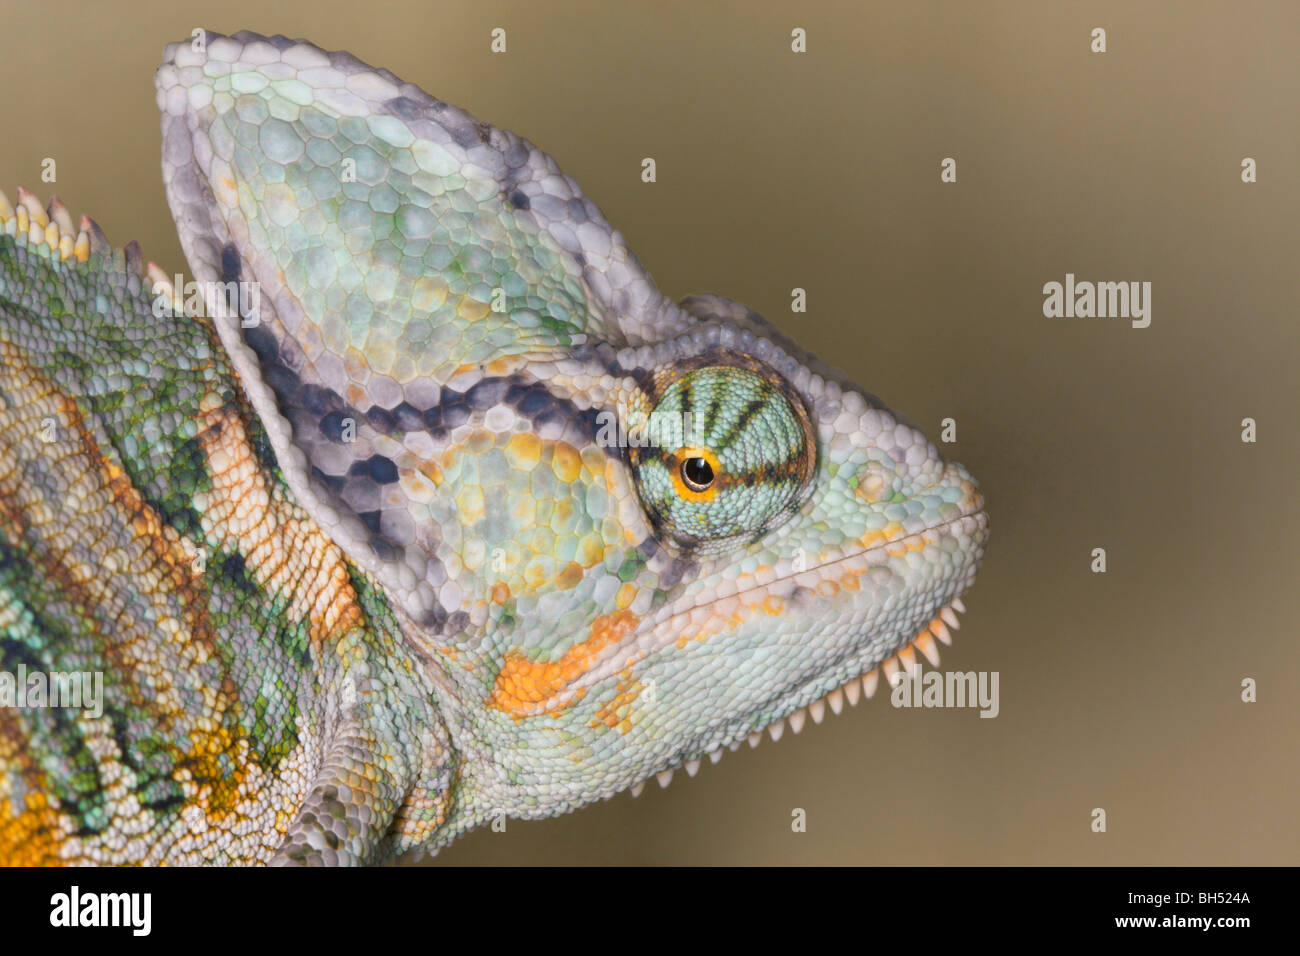 Yemen or veiled chamaeleon or chameleon (Chamaeleo calyptratus) close-up of head. Stock Photo